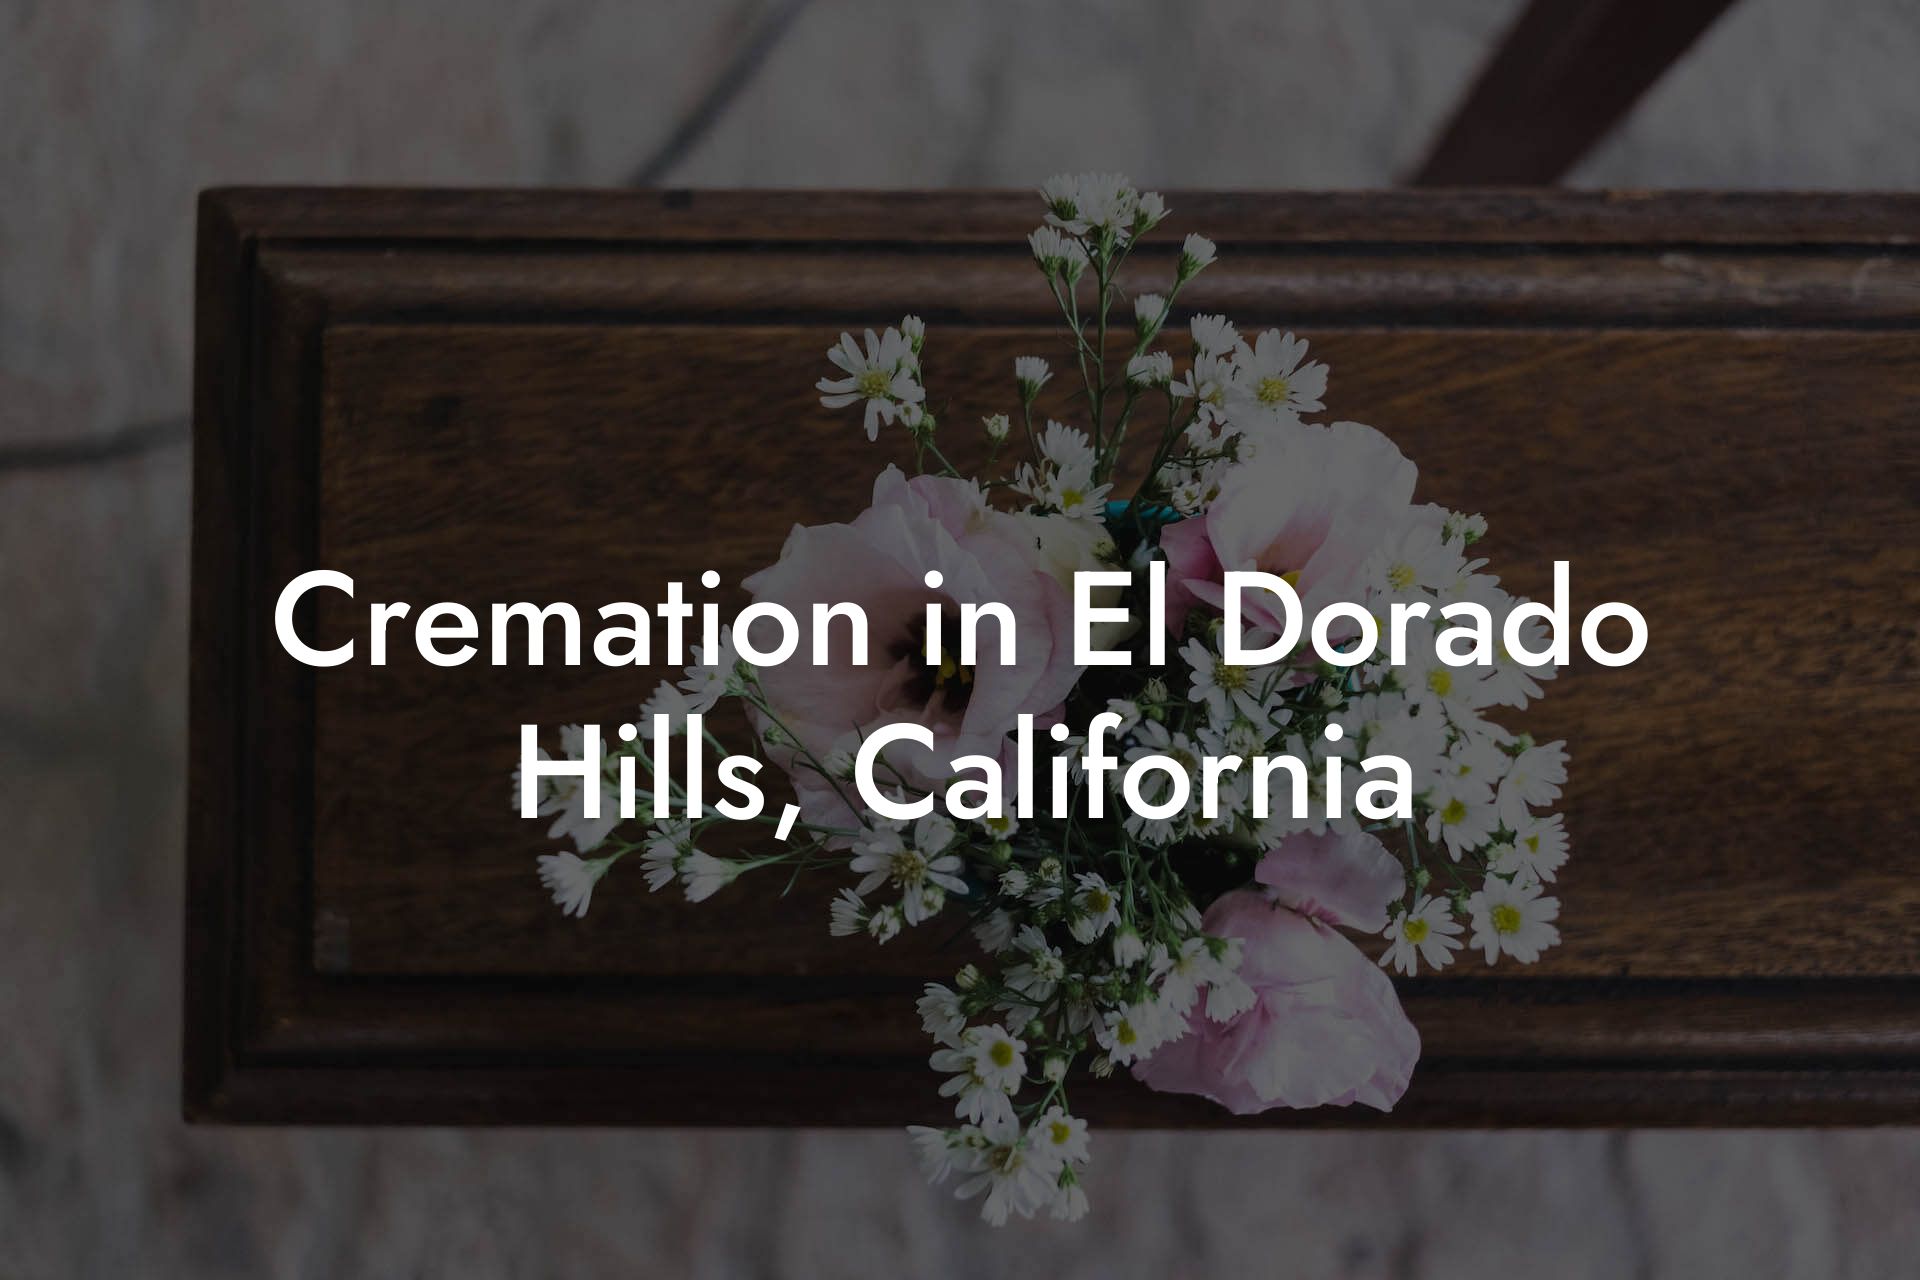 Cremation in El Dorado Hills, California